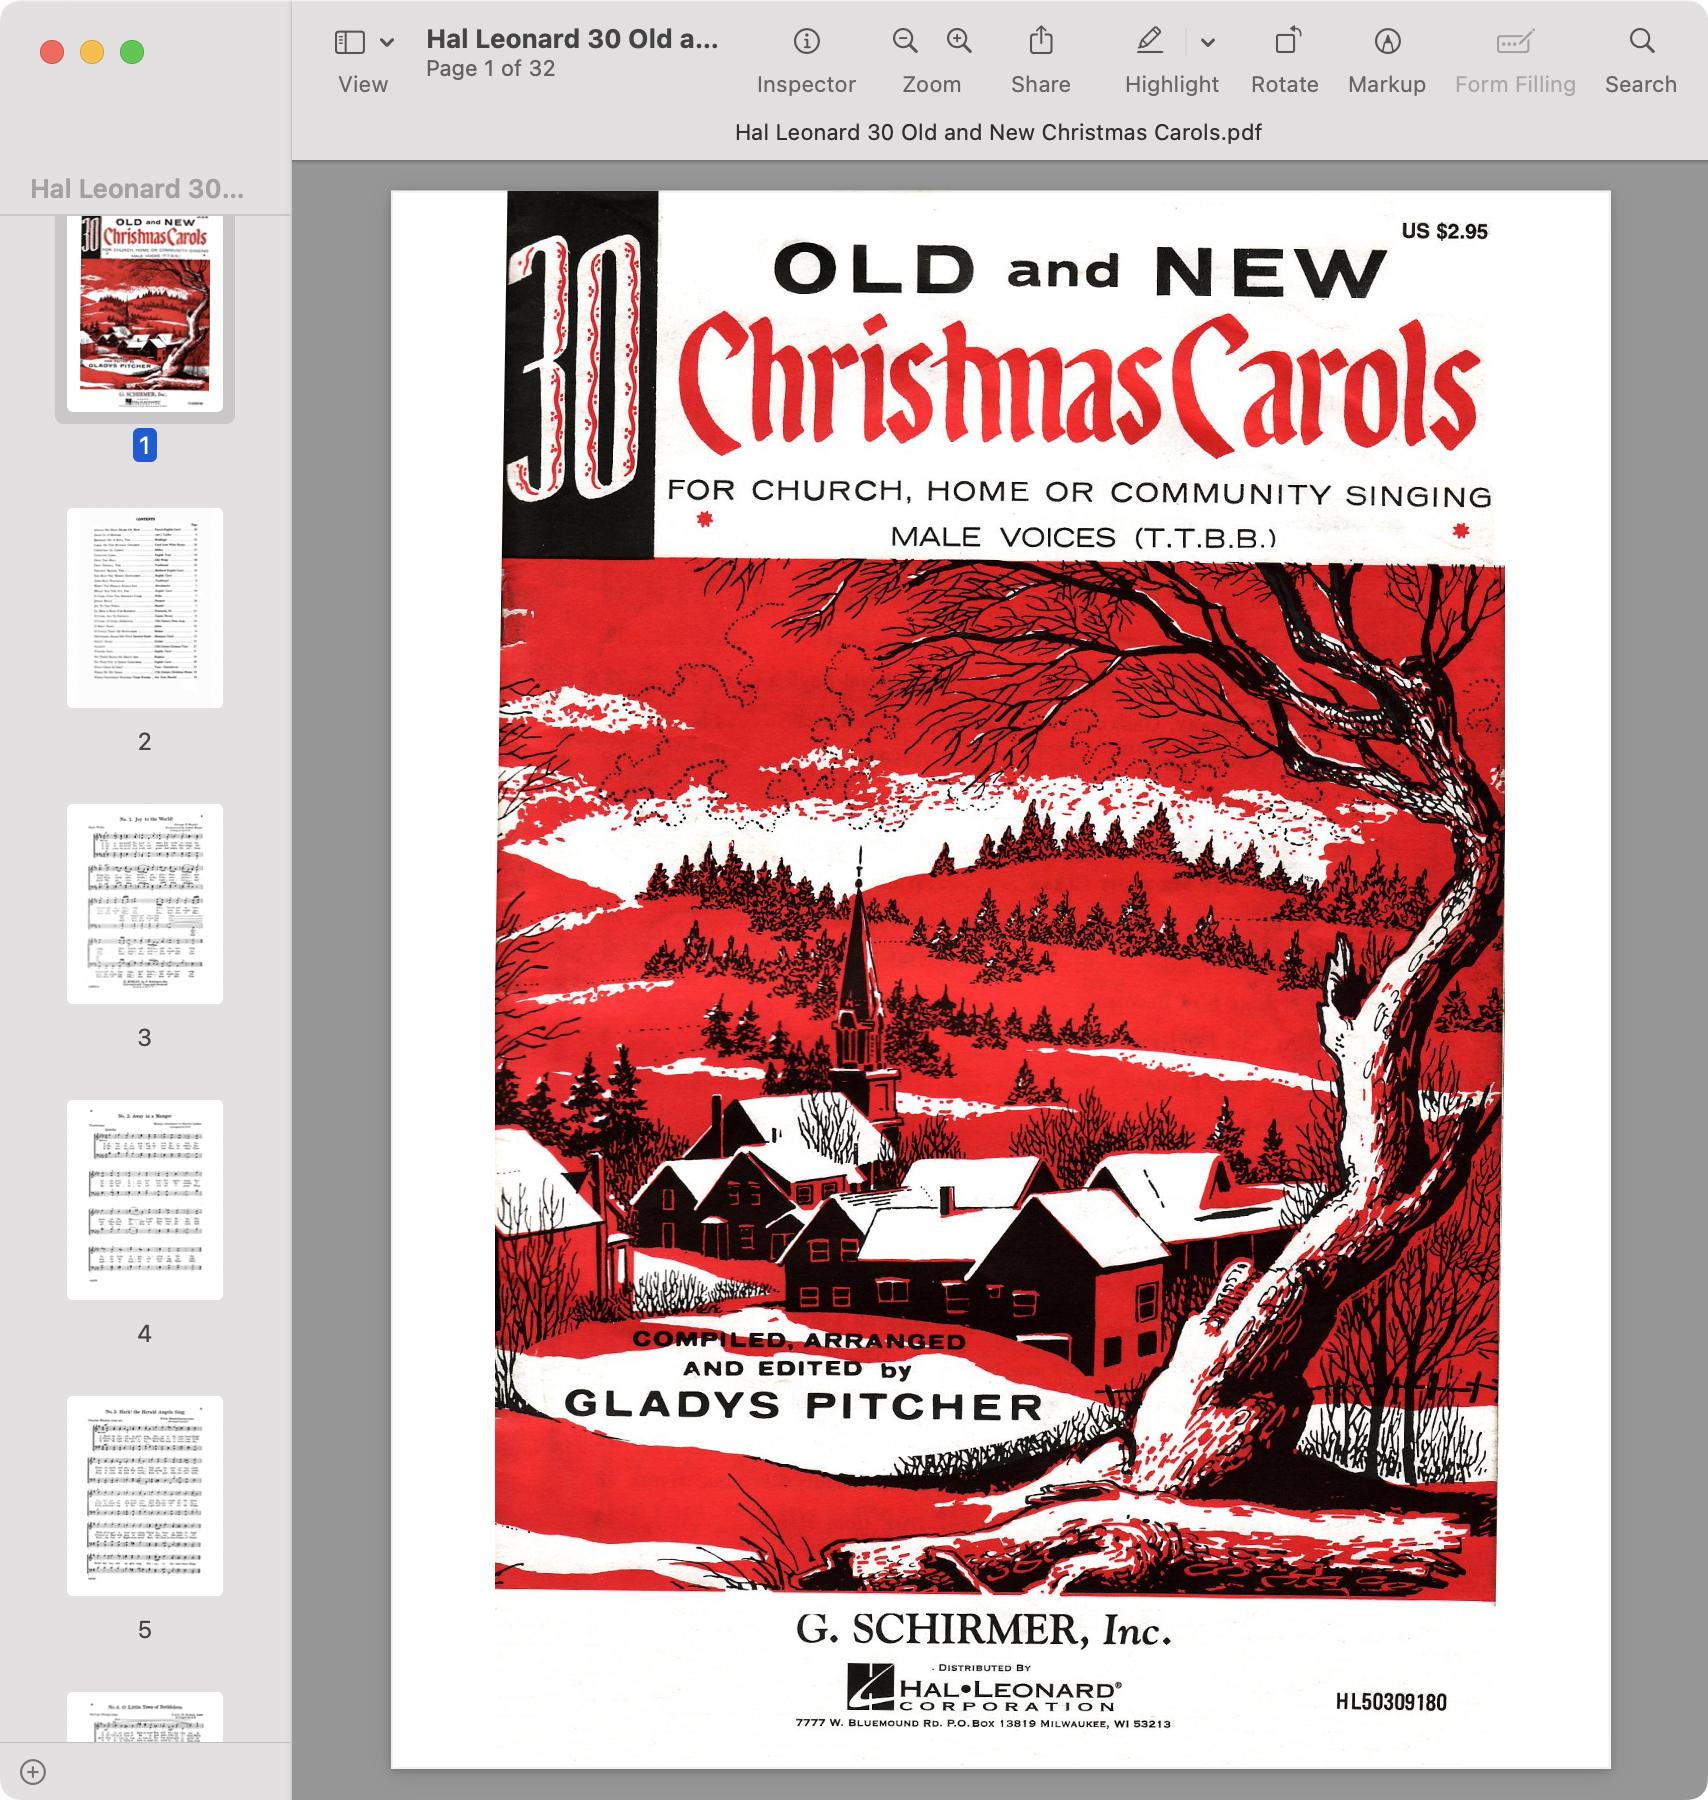 Hal Leonard 30 Old and New Christmas Carols.jpg